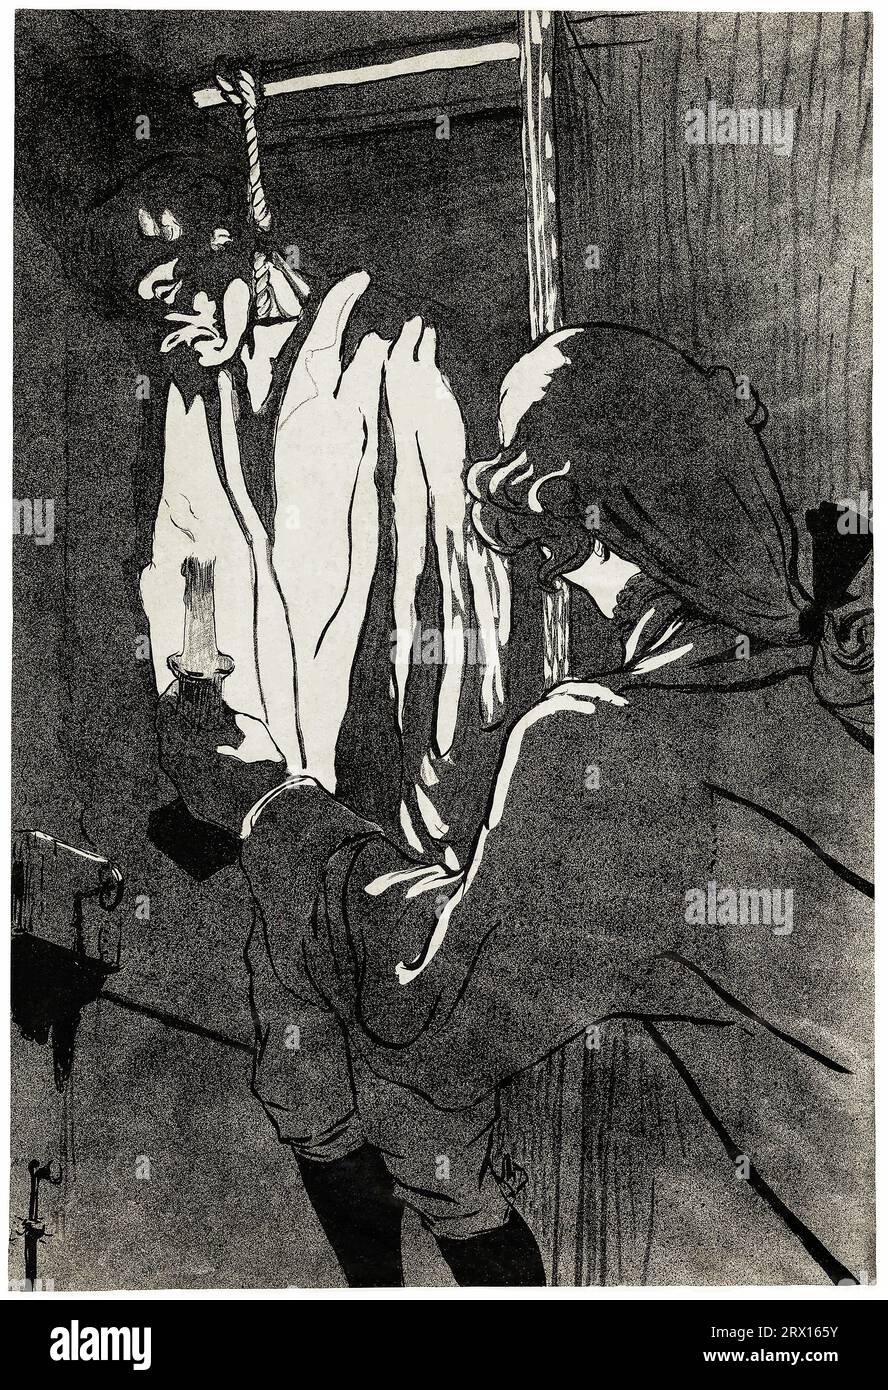 Der gehängte Mann druckte in hoher Auflösung von Henri de Toulouse-Lautrec. Original vom Art Institute of Chicago. Stockfoto